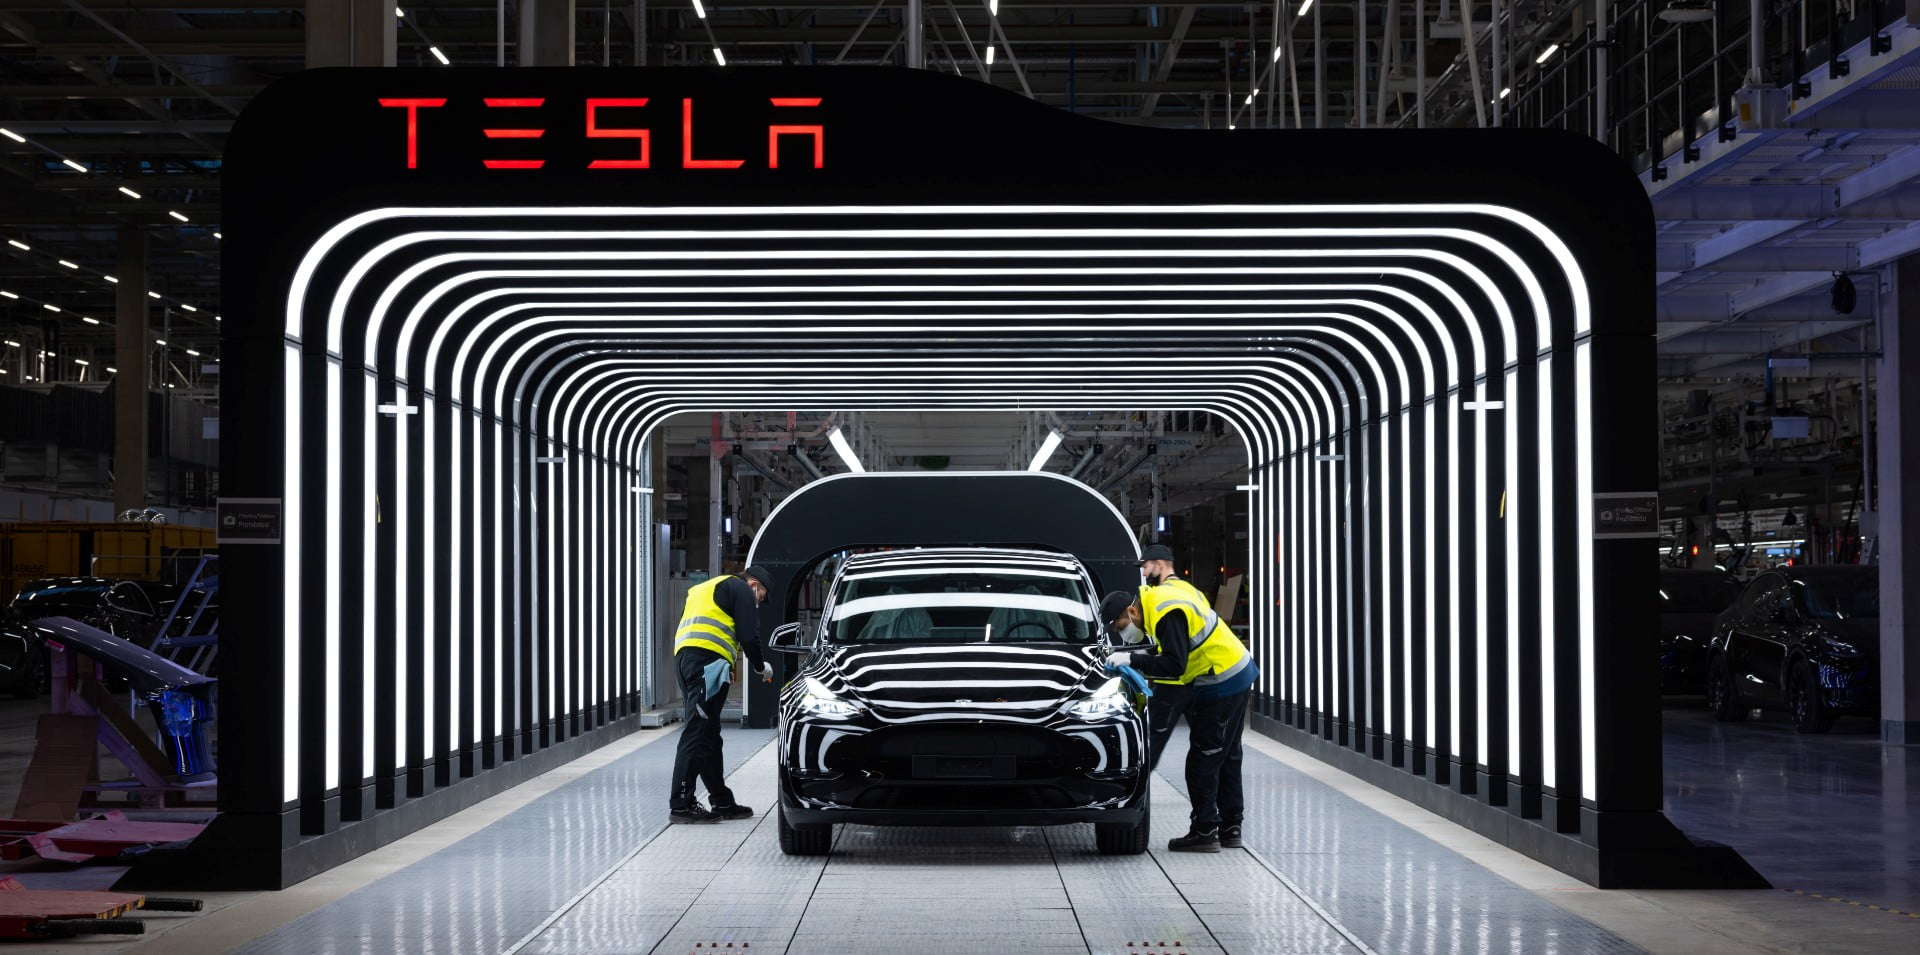 Les retards de l'usine Tesla montrent «comment nous nous opposons à notre manière»: les experts allemands de l'industrie s'expriment